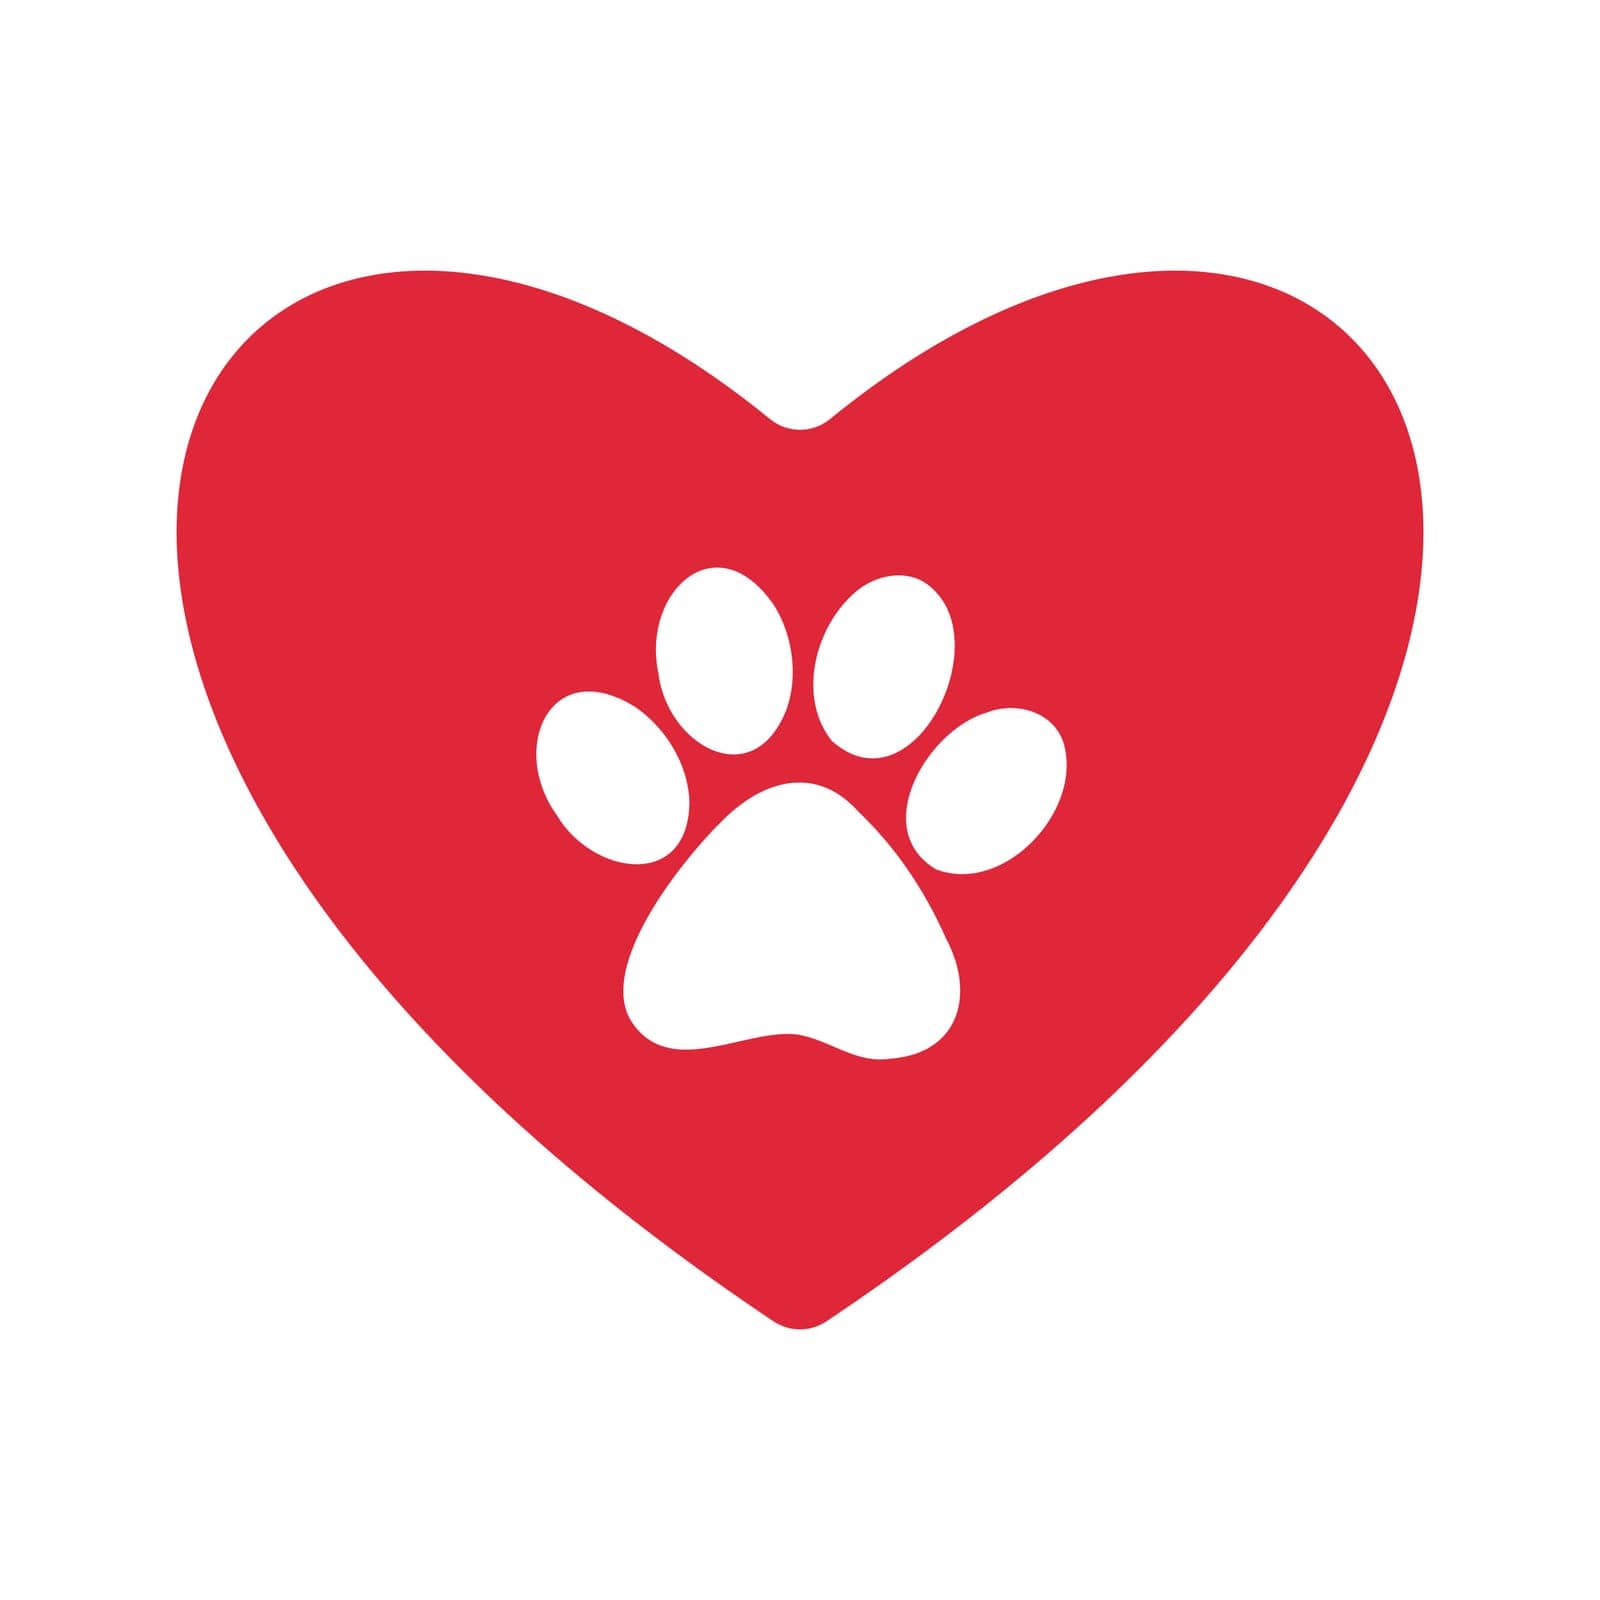 Pet friendly, pet lover sticker, paw in heart by Verachana